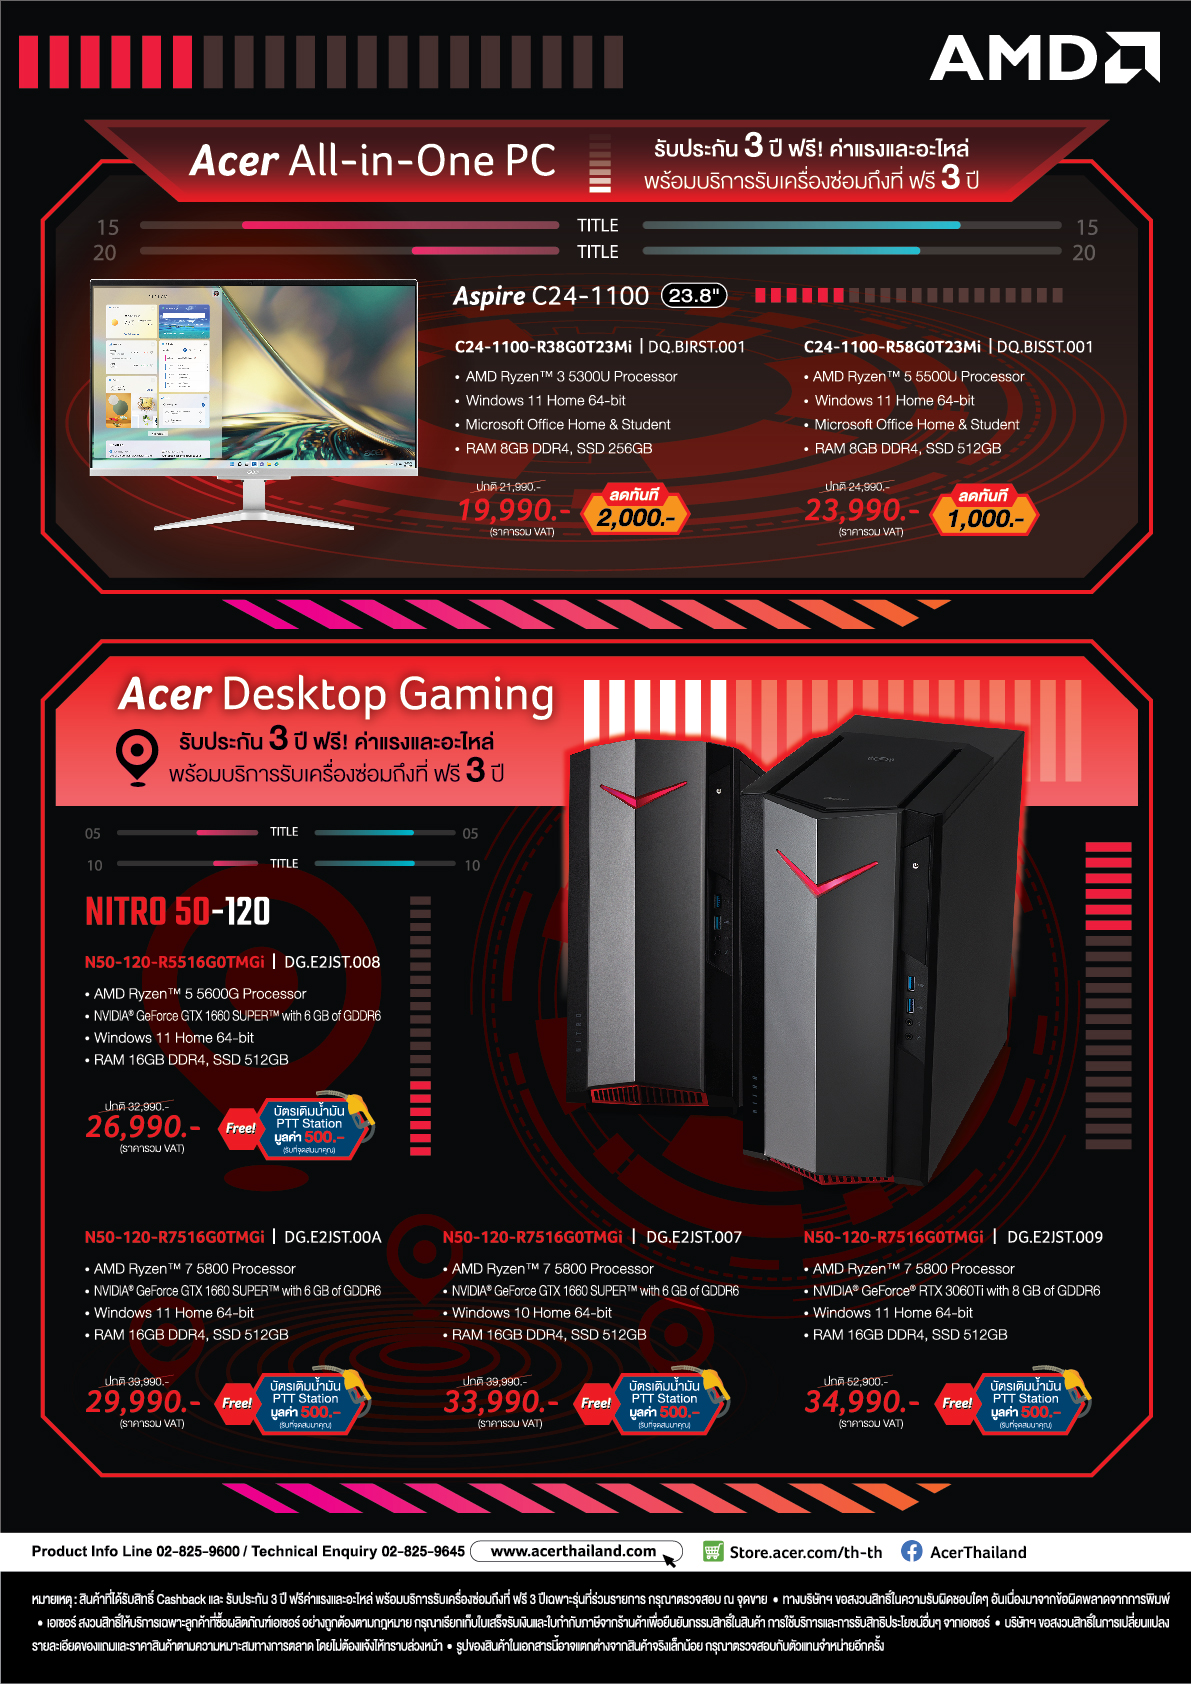 amd commart nov 2022 02 Acer x AMD Commart   Game On (24 27 Nov22) Promotion โปรโมชั่นสุดพิเศษจากทาง Acer ร่วมกับ AMD ในงาน Commart   Game On วันที่ 24 27 พ.ย. 2565 นี้ ลดราคาอย่างมากมายพร้อมของแถมสุดพิเศษอีกหลายรายการ